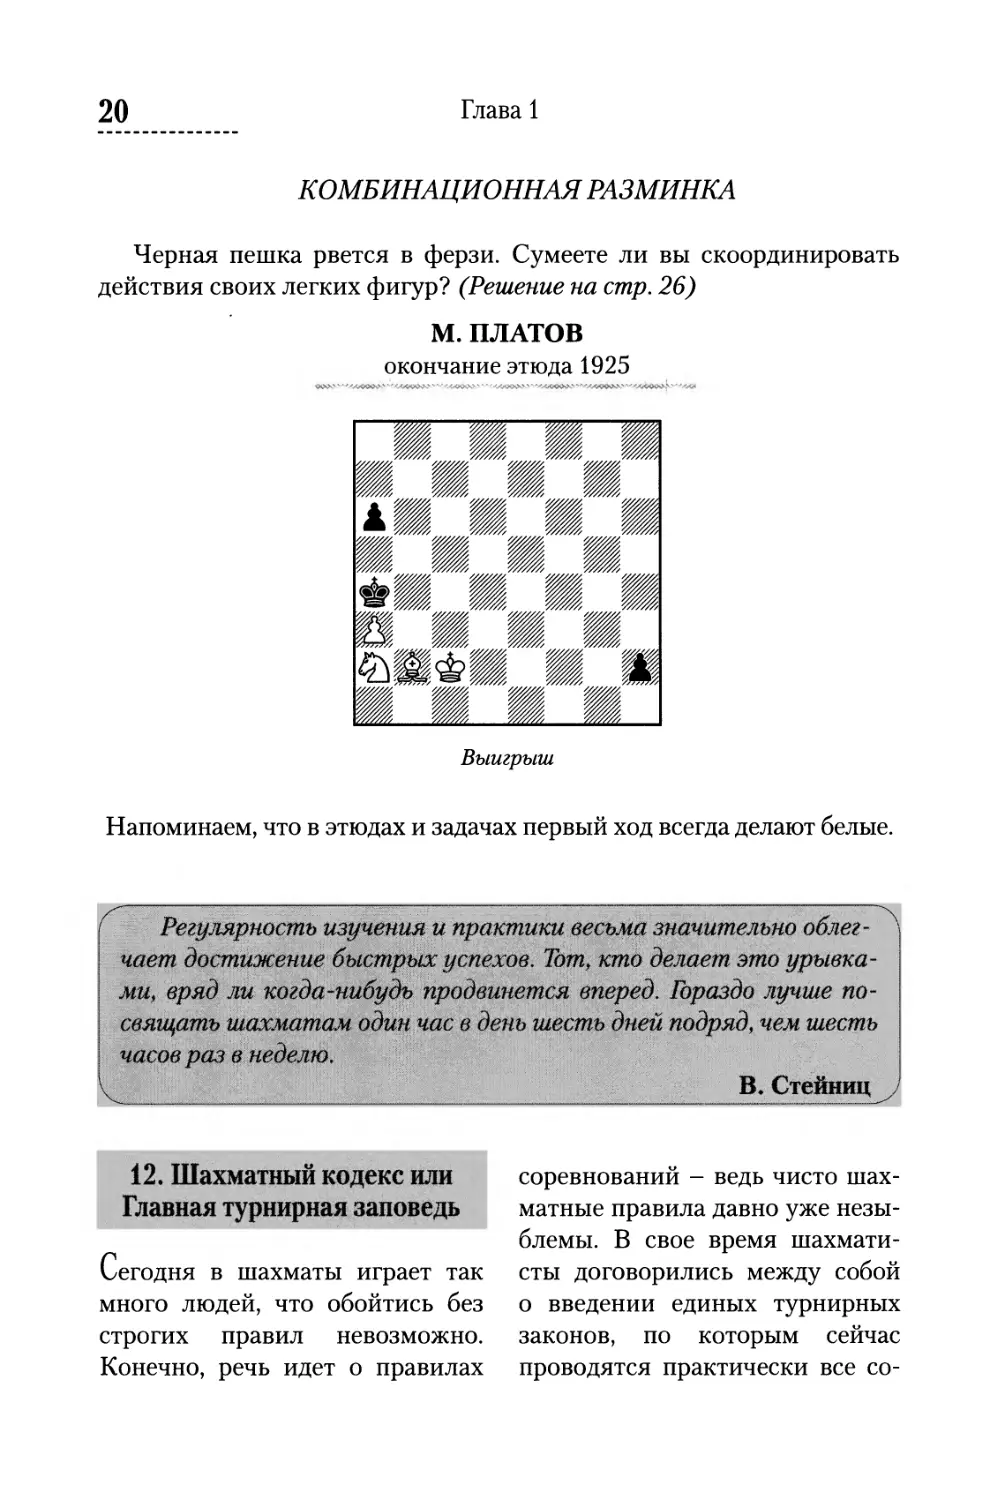 Комбинационная разминка
12. Шахматный кодекс или Главная турнирная заповедь